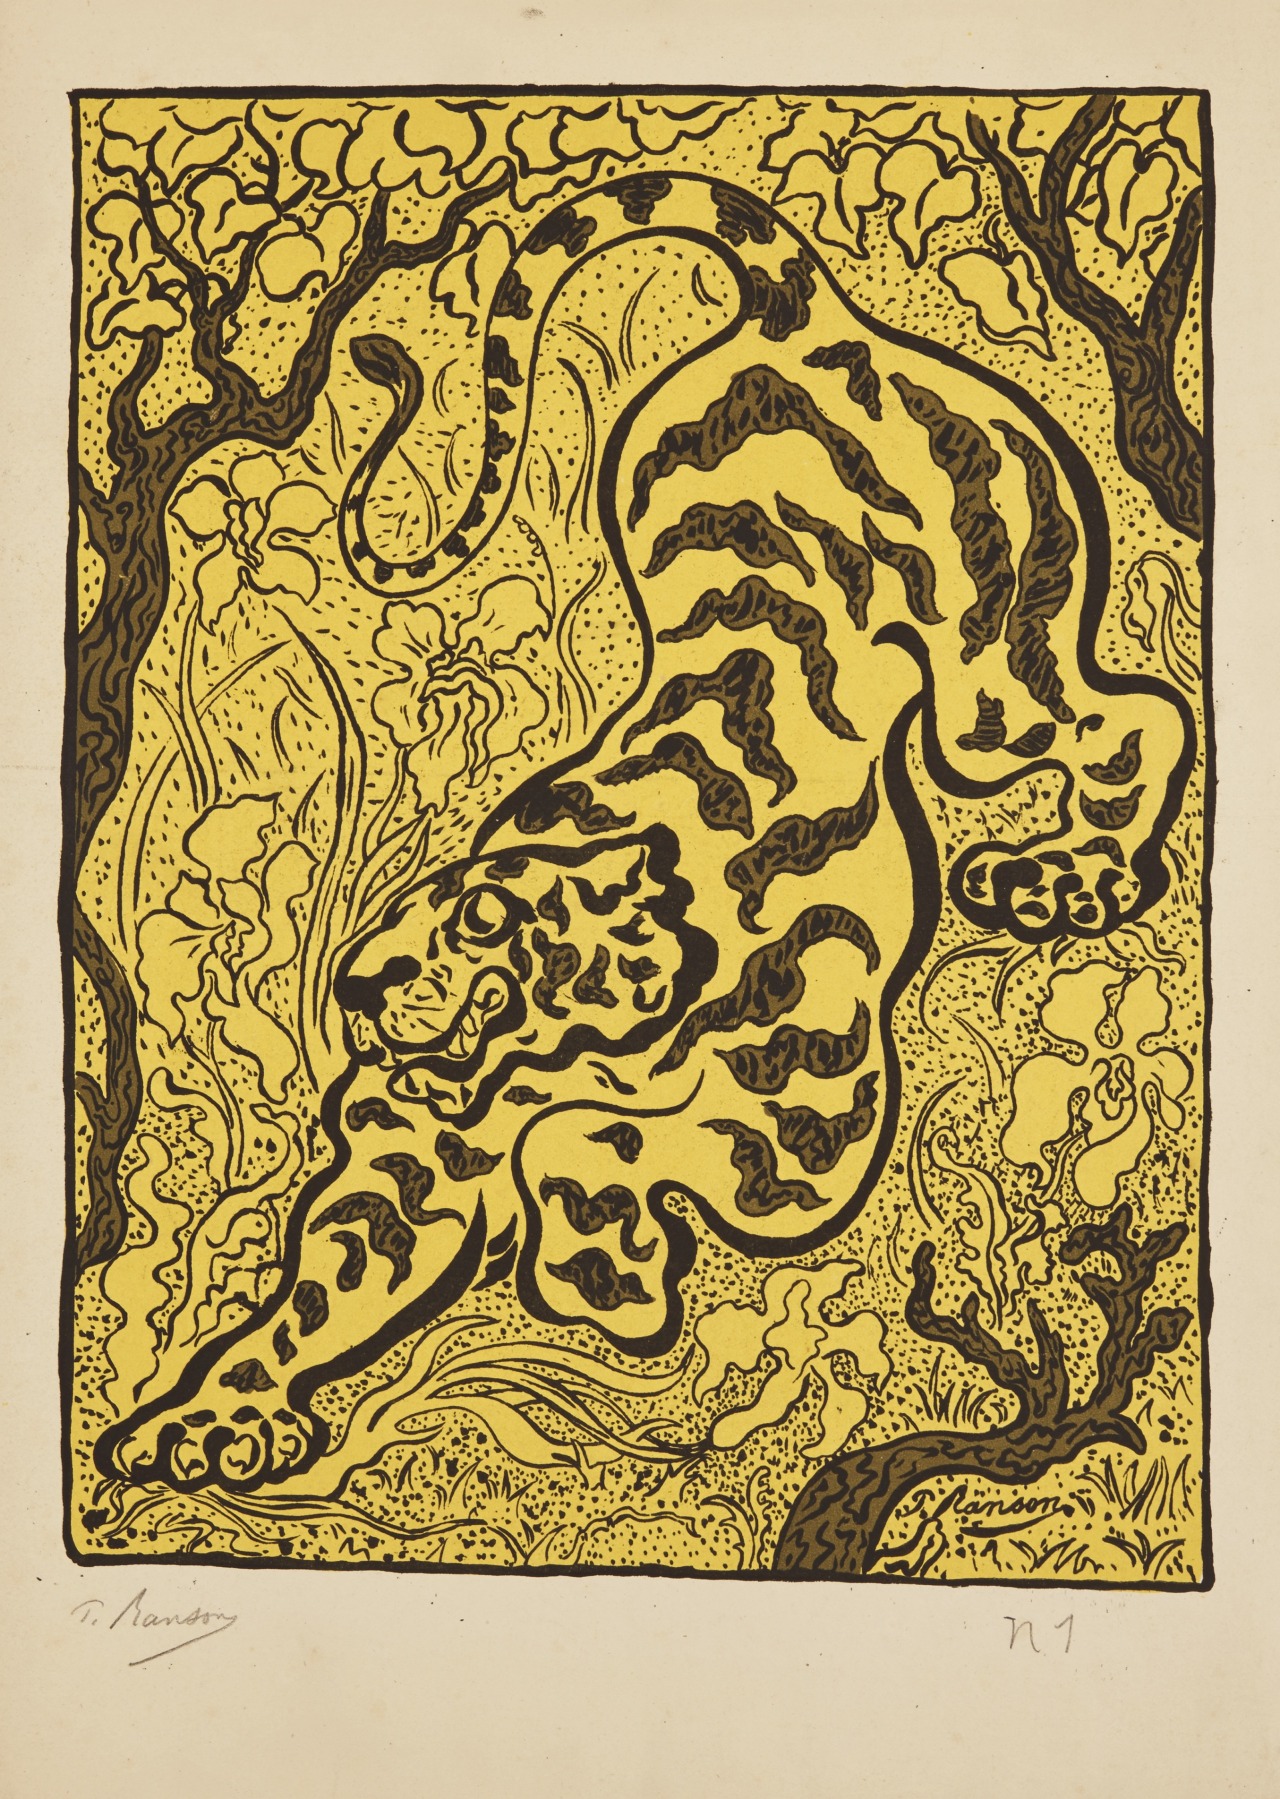 christiesauctions:
“Paul Elie Ranson (1864-1909)
Tigre dans les jungles
Prints & Multiples
”